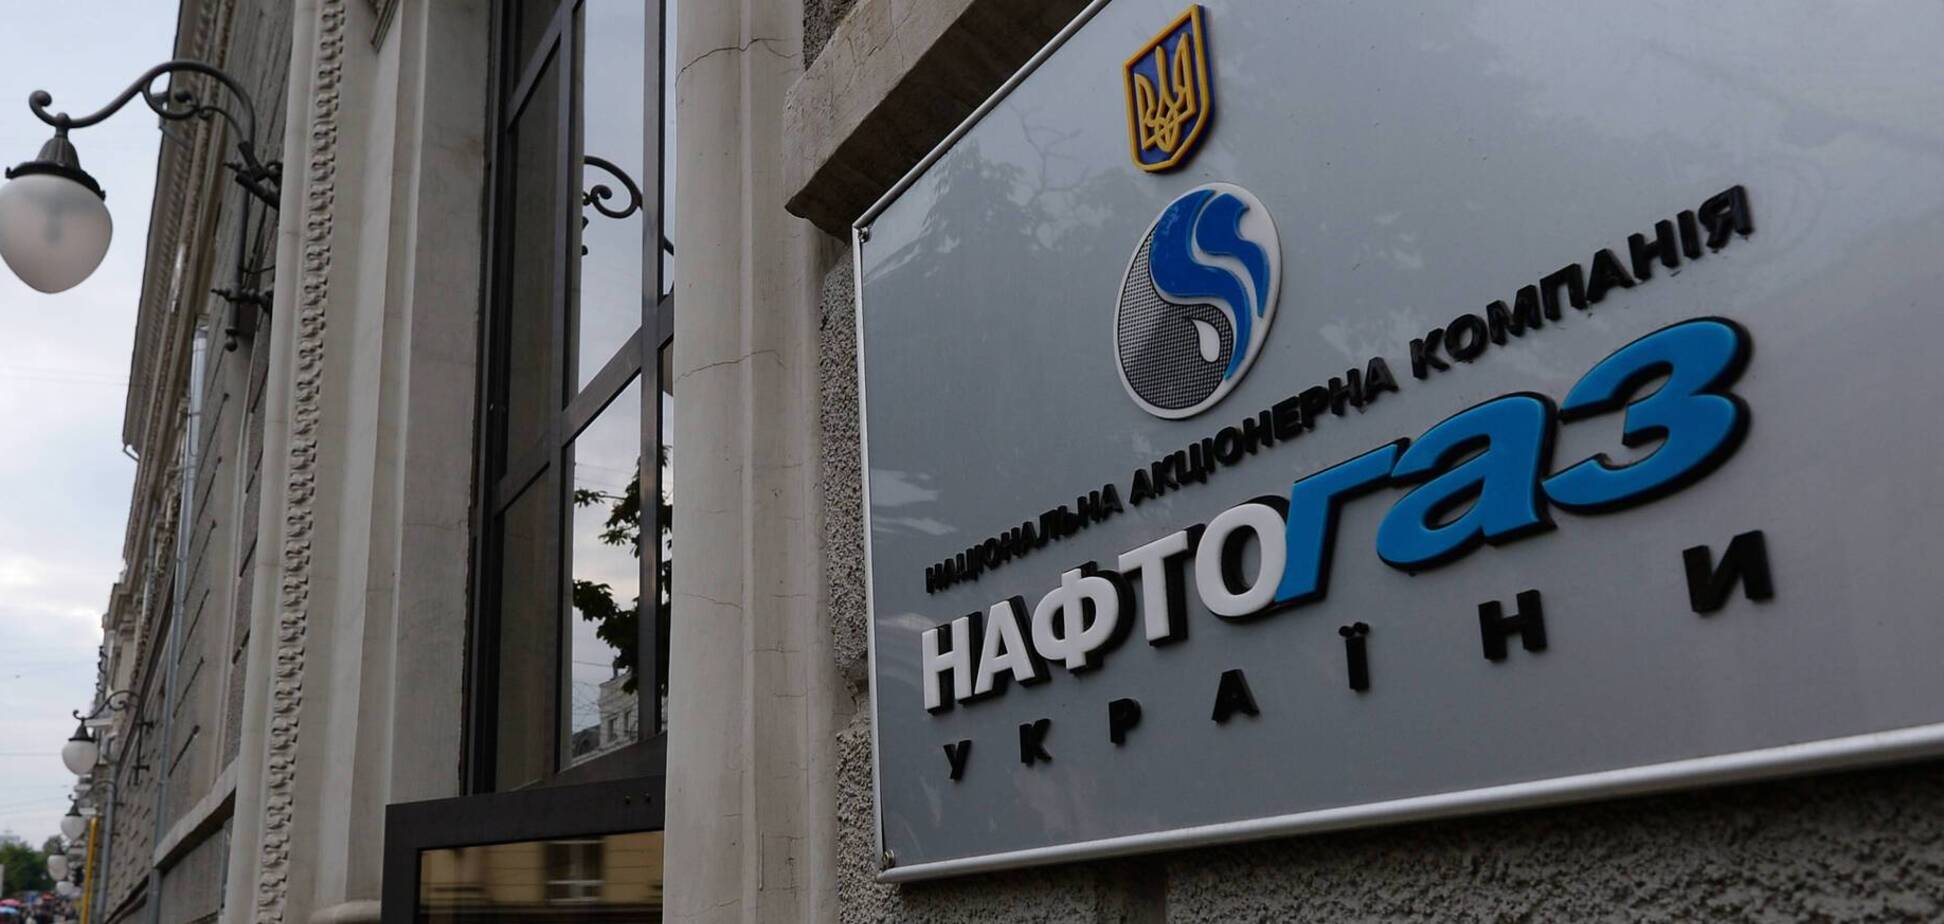 Заказать газ можно через ПриватБанк: Нафтогаз запустил партнерский проект с крупнейшим банком Украины